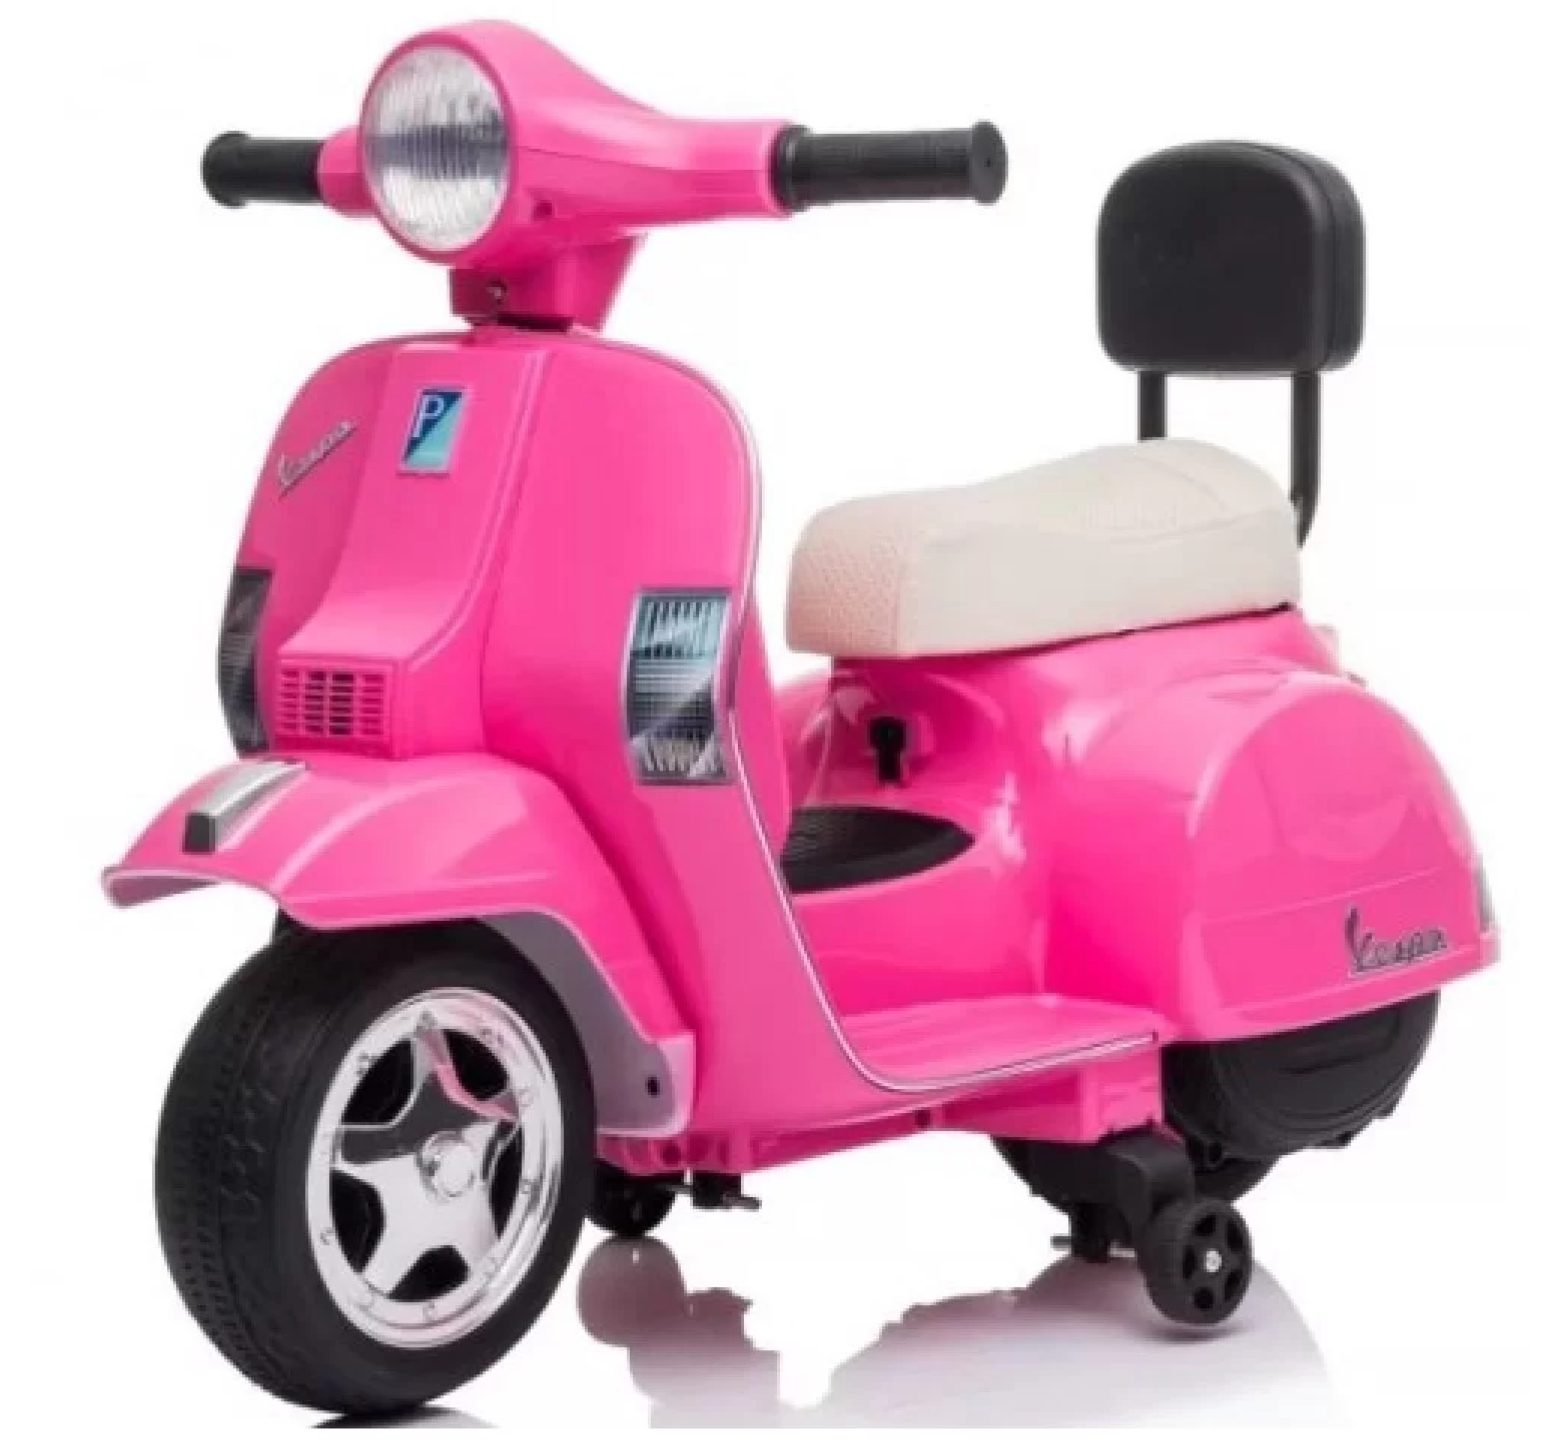 Ηλεκτροκίνητη μηχανή Vespa Licensed PX150 6V σε ροζ χρώμα